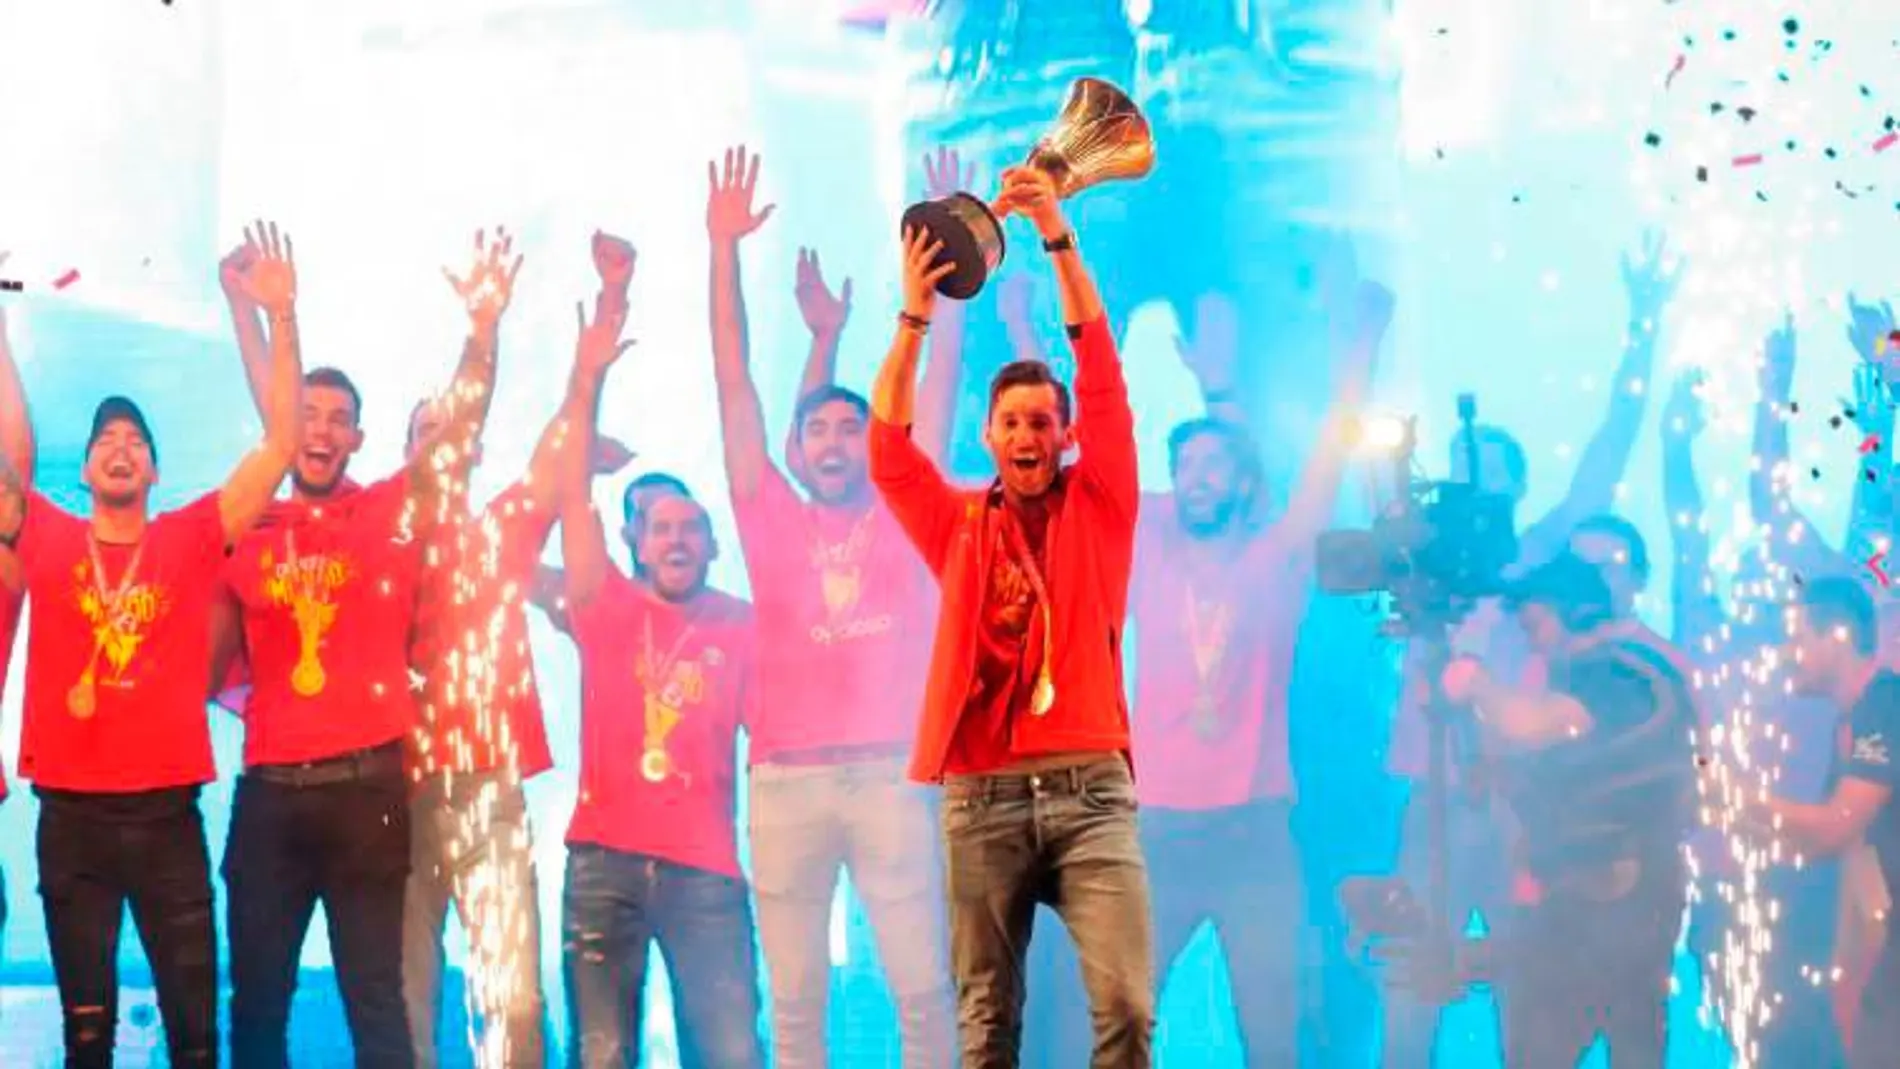 Rudy Fernández sostiene el trofeo que acredita a la selección española de baloncesto campeona del Mundial de baloncesto / Efe